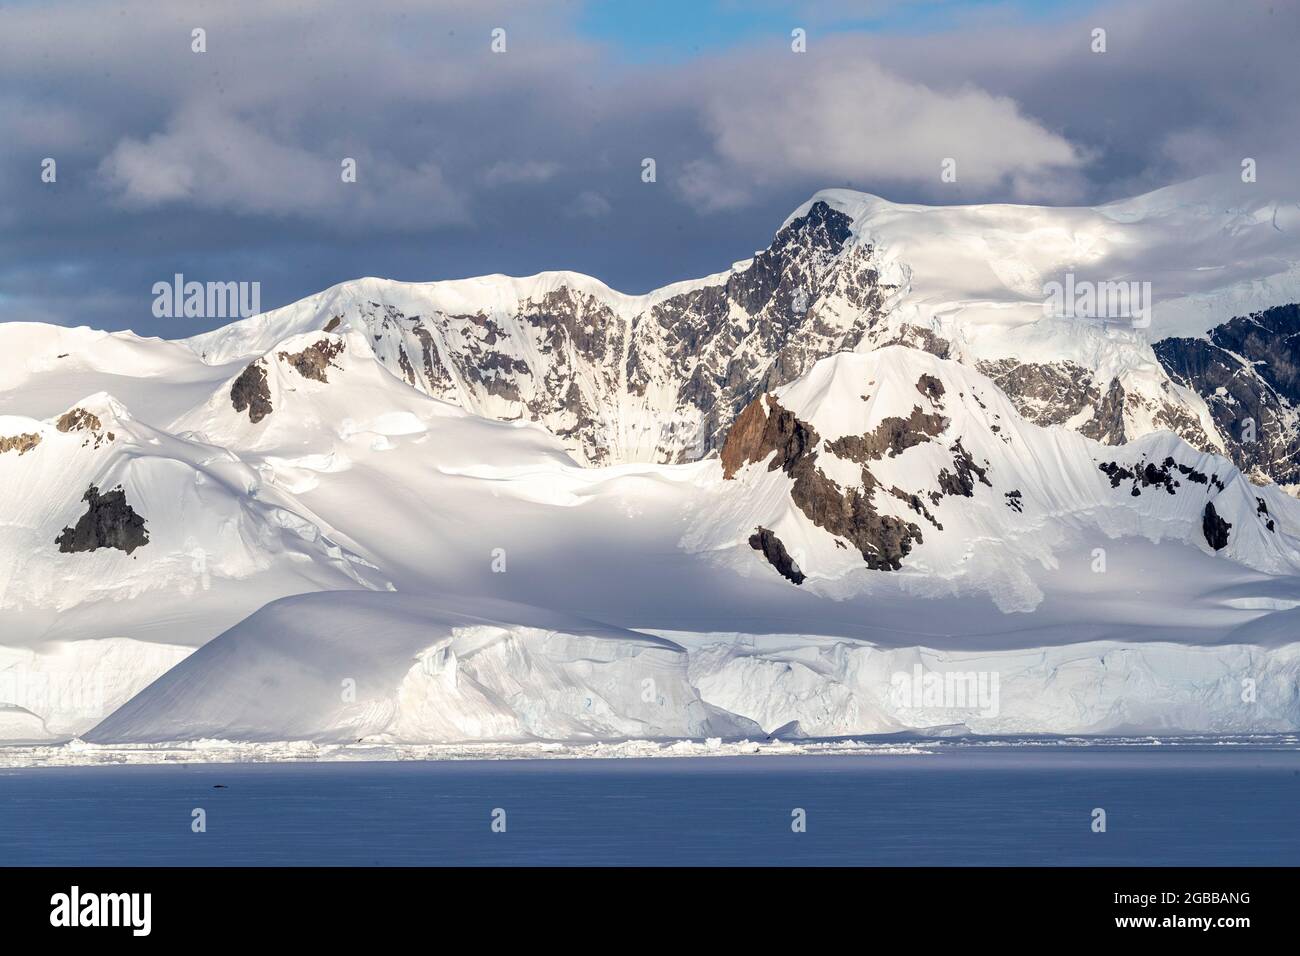 La glace et la neige du rivage couvraient les montagnes au début de la saison dans la baie de Wilhamena, en Antarctique, dans les régions polaires Banque D'Images